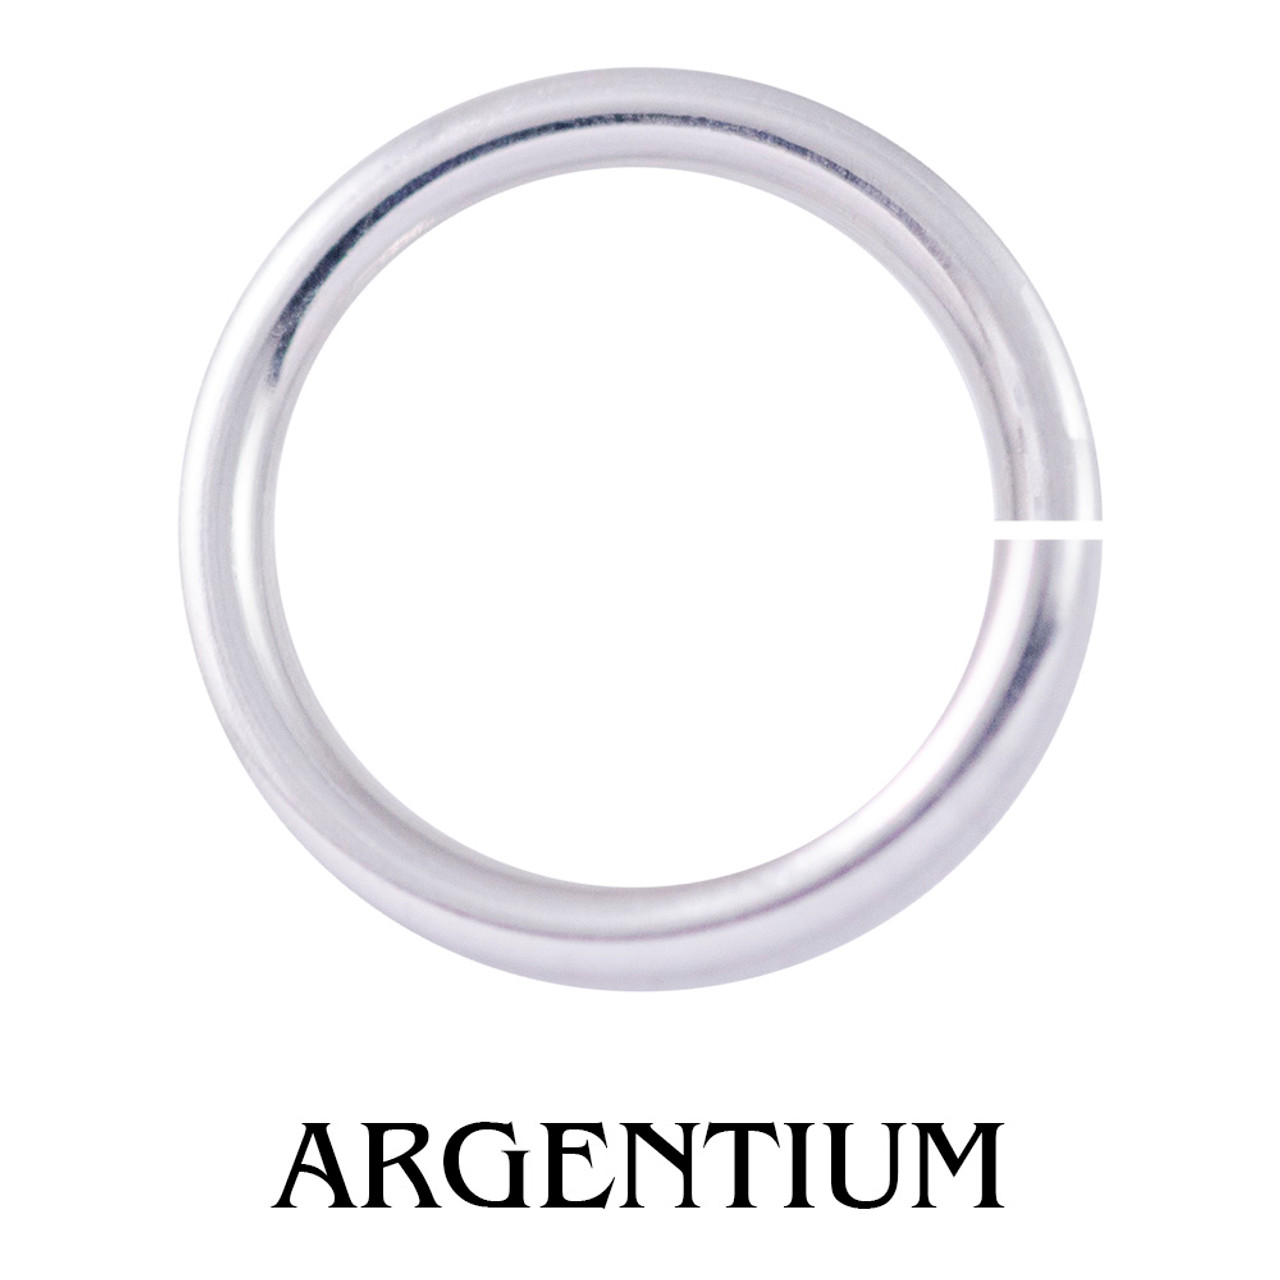 Argentium Silver - So, What is Argentium Silver?